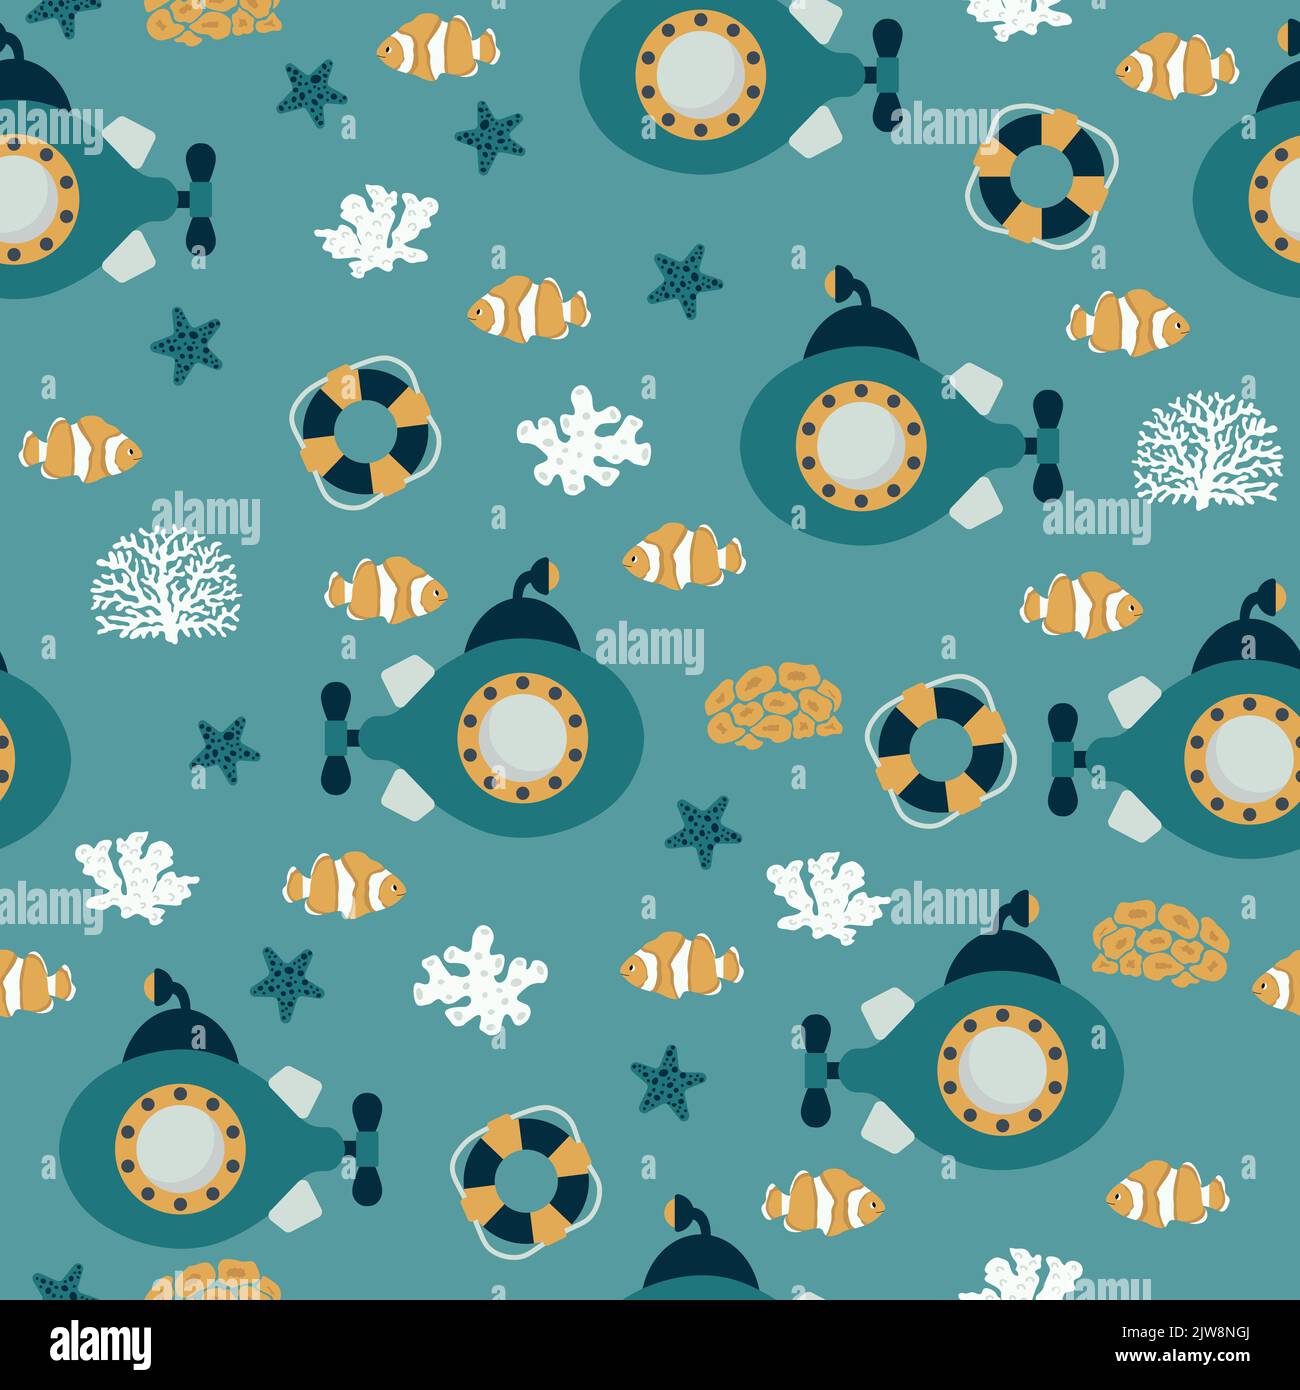 Vektor nahtlose Muster mit U-Boot, Rettungsring, Clown Fisch, Algen, Seesterne.Unterwasser Cartoon Kreaturen.Marine Hintergrund.Süße Ozean-Muster für Stock Vektor